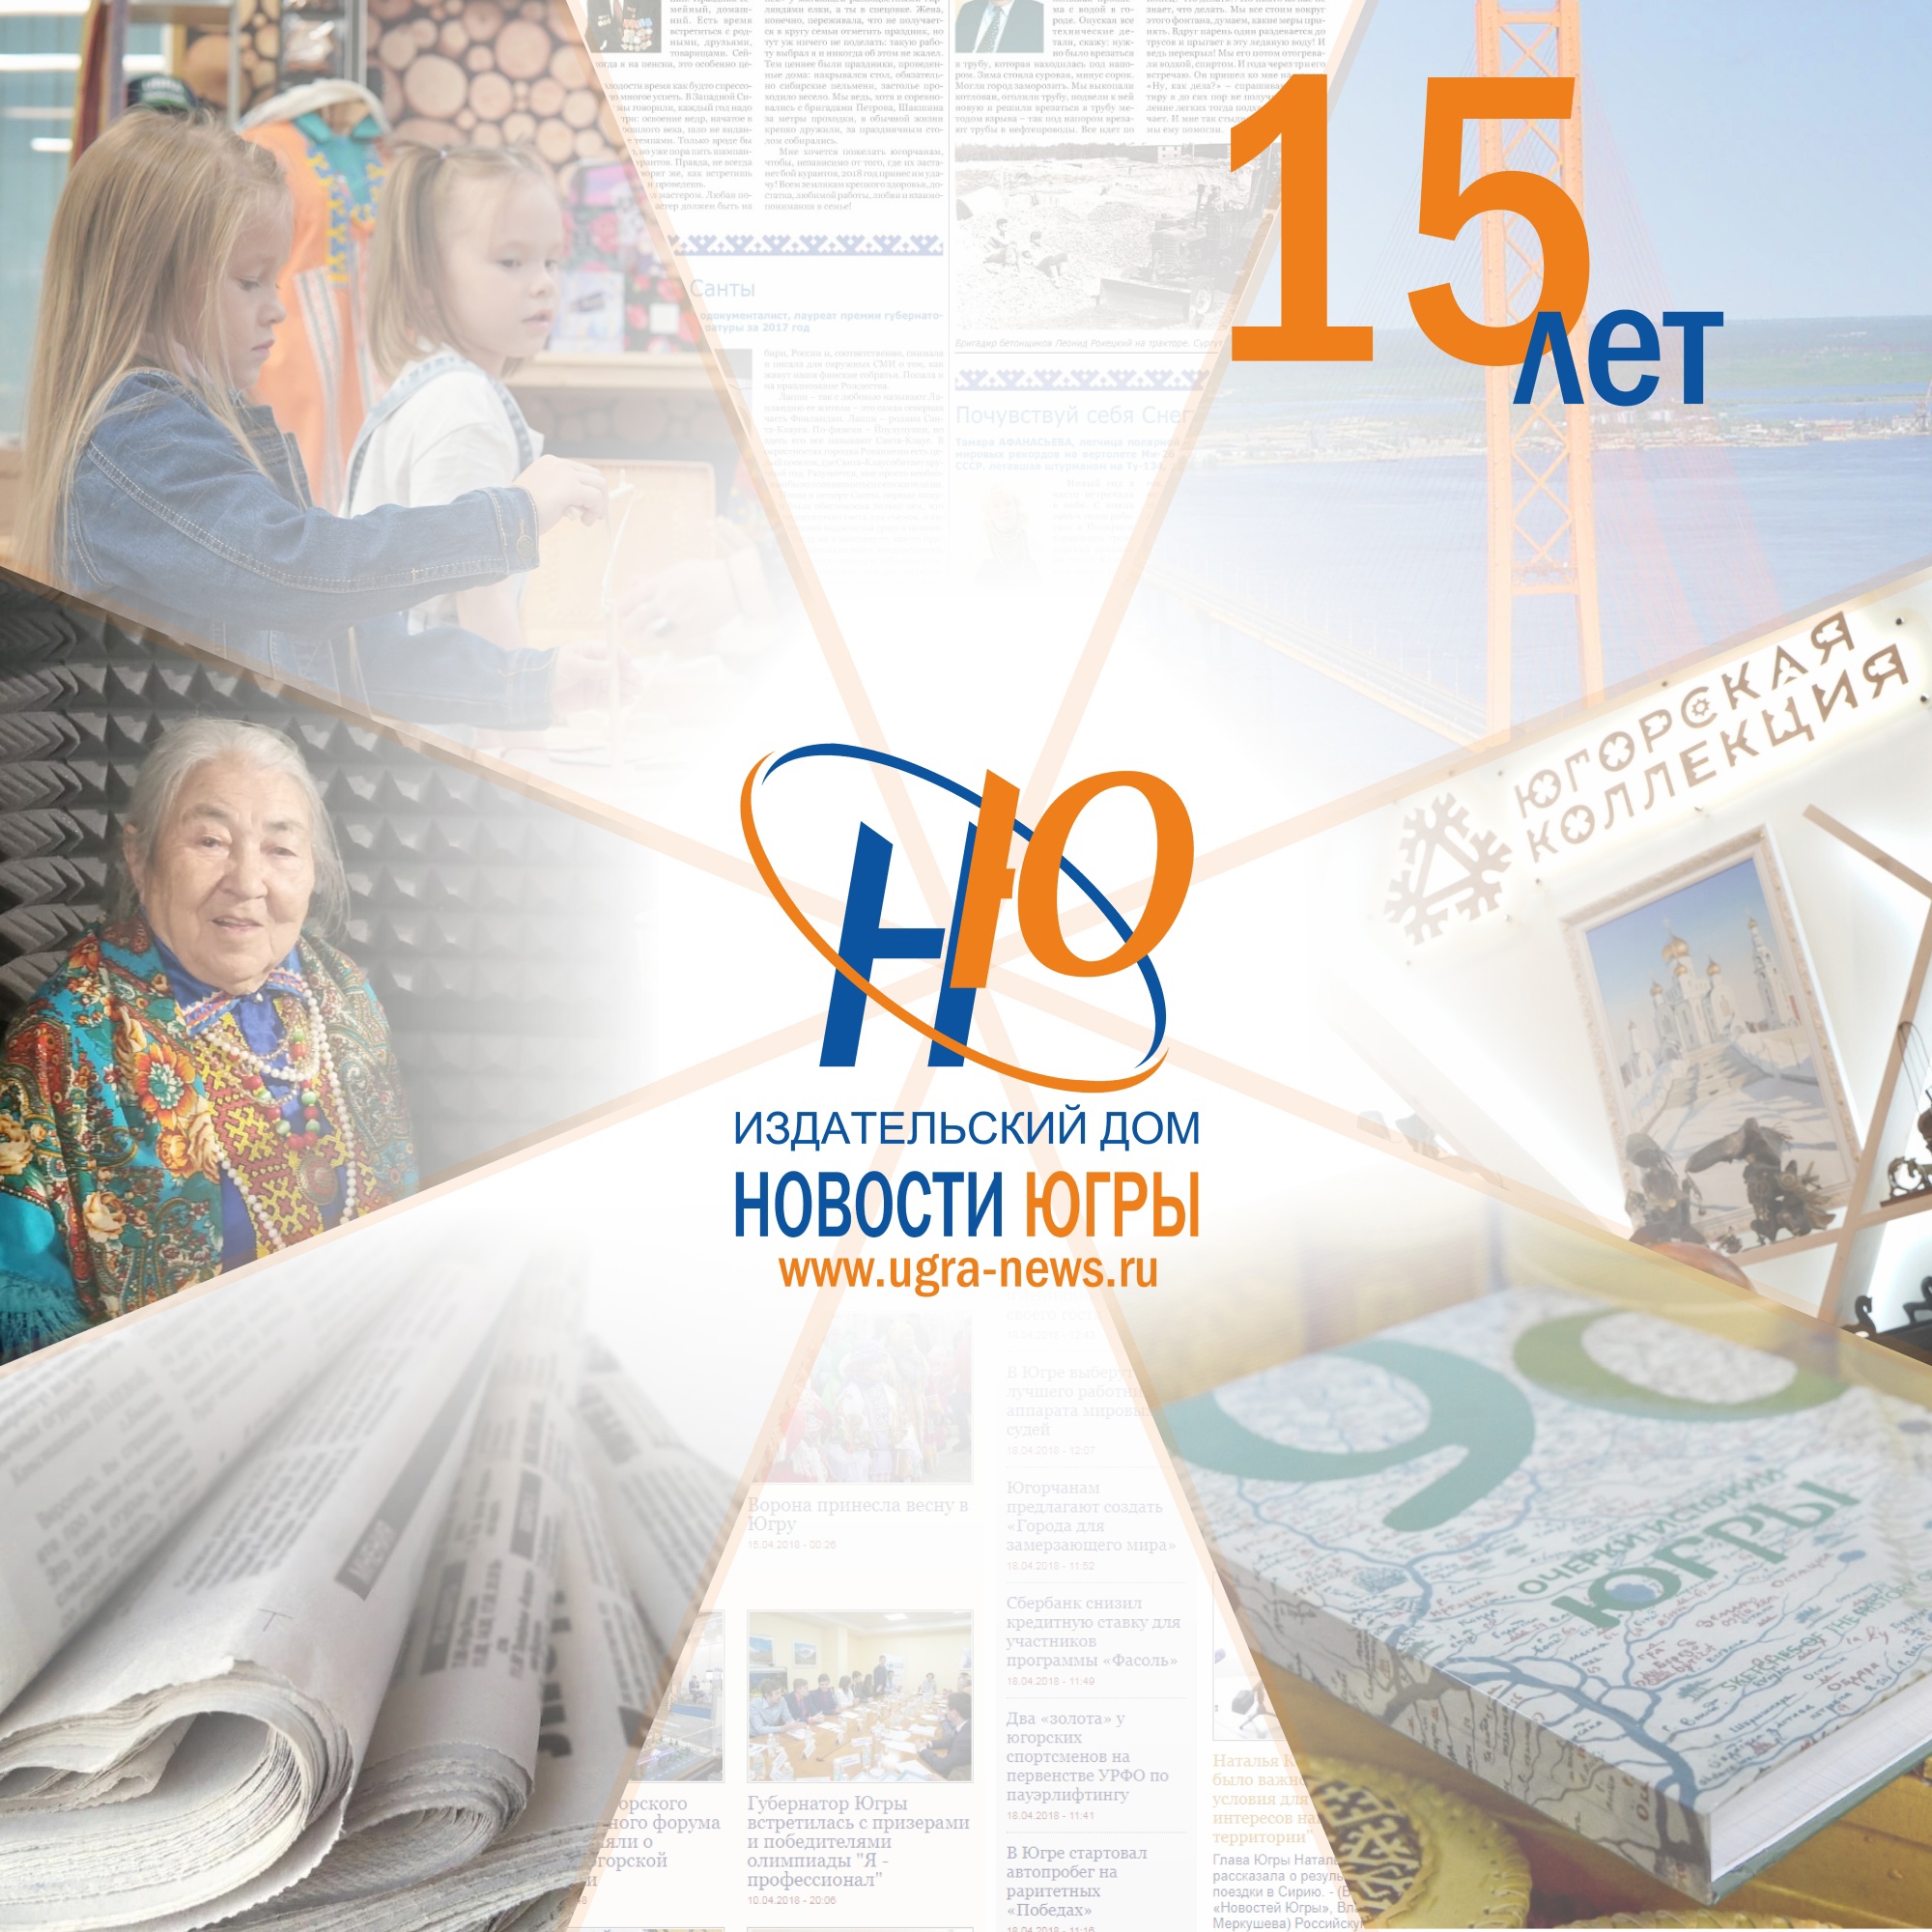 Сегодня, 29 ноября, издательскому дому «Новости Югры» исполняется 15 лет! 